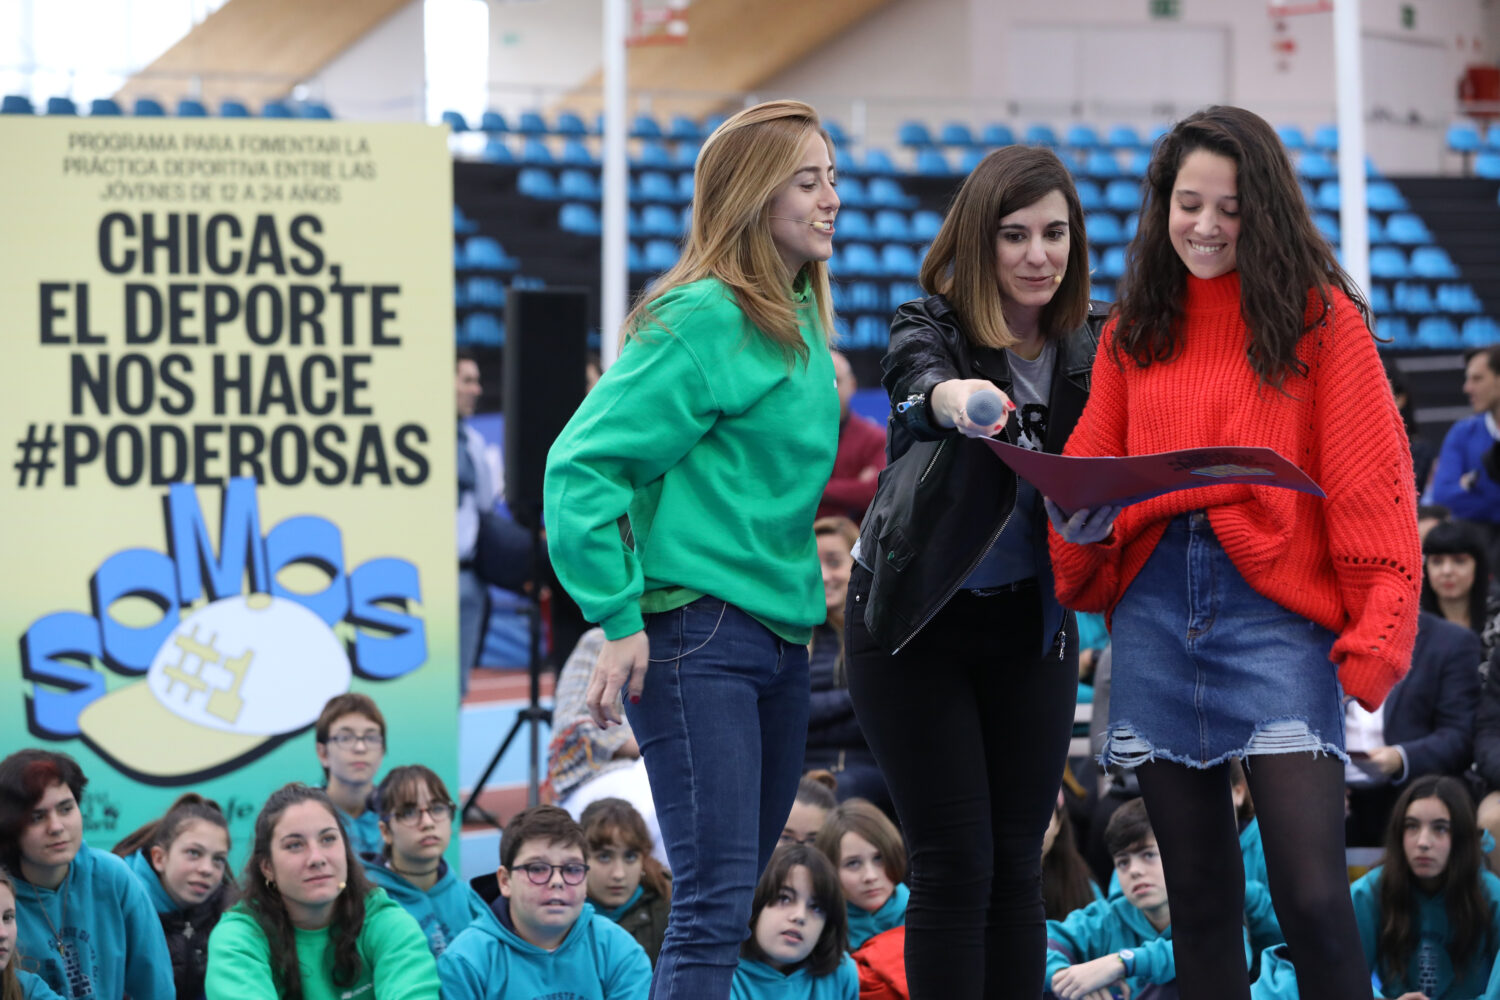 Poderosas es la iniciativa para visibilizar el deporte femenino / Ayuntamiento de Madrid 